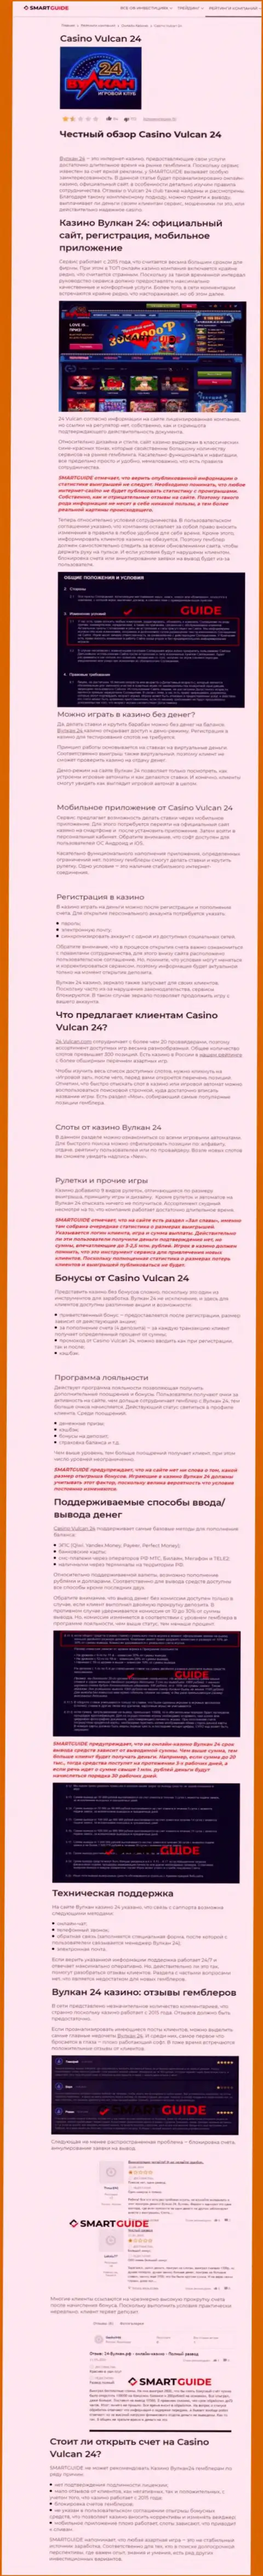 Вулкан 24 - контора, которая зарабатывает на присваивании вложенных денег собственных реальных клиентов (обзор)